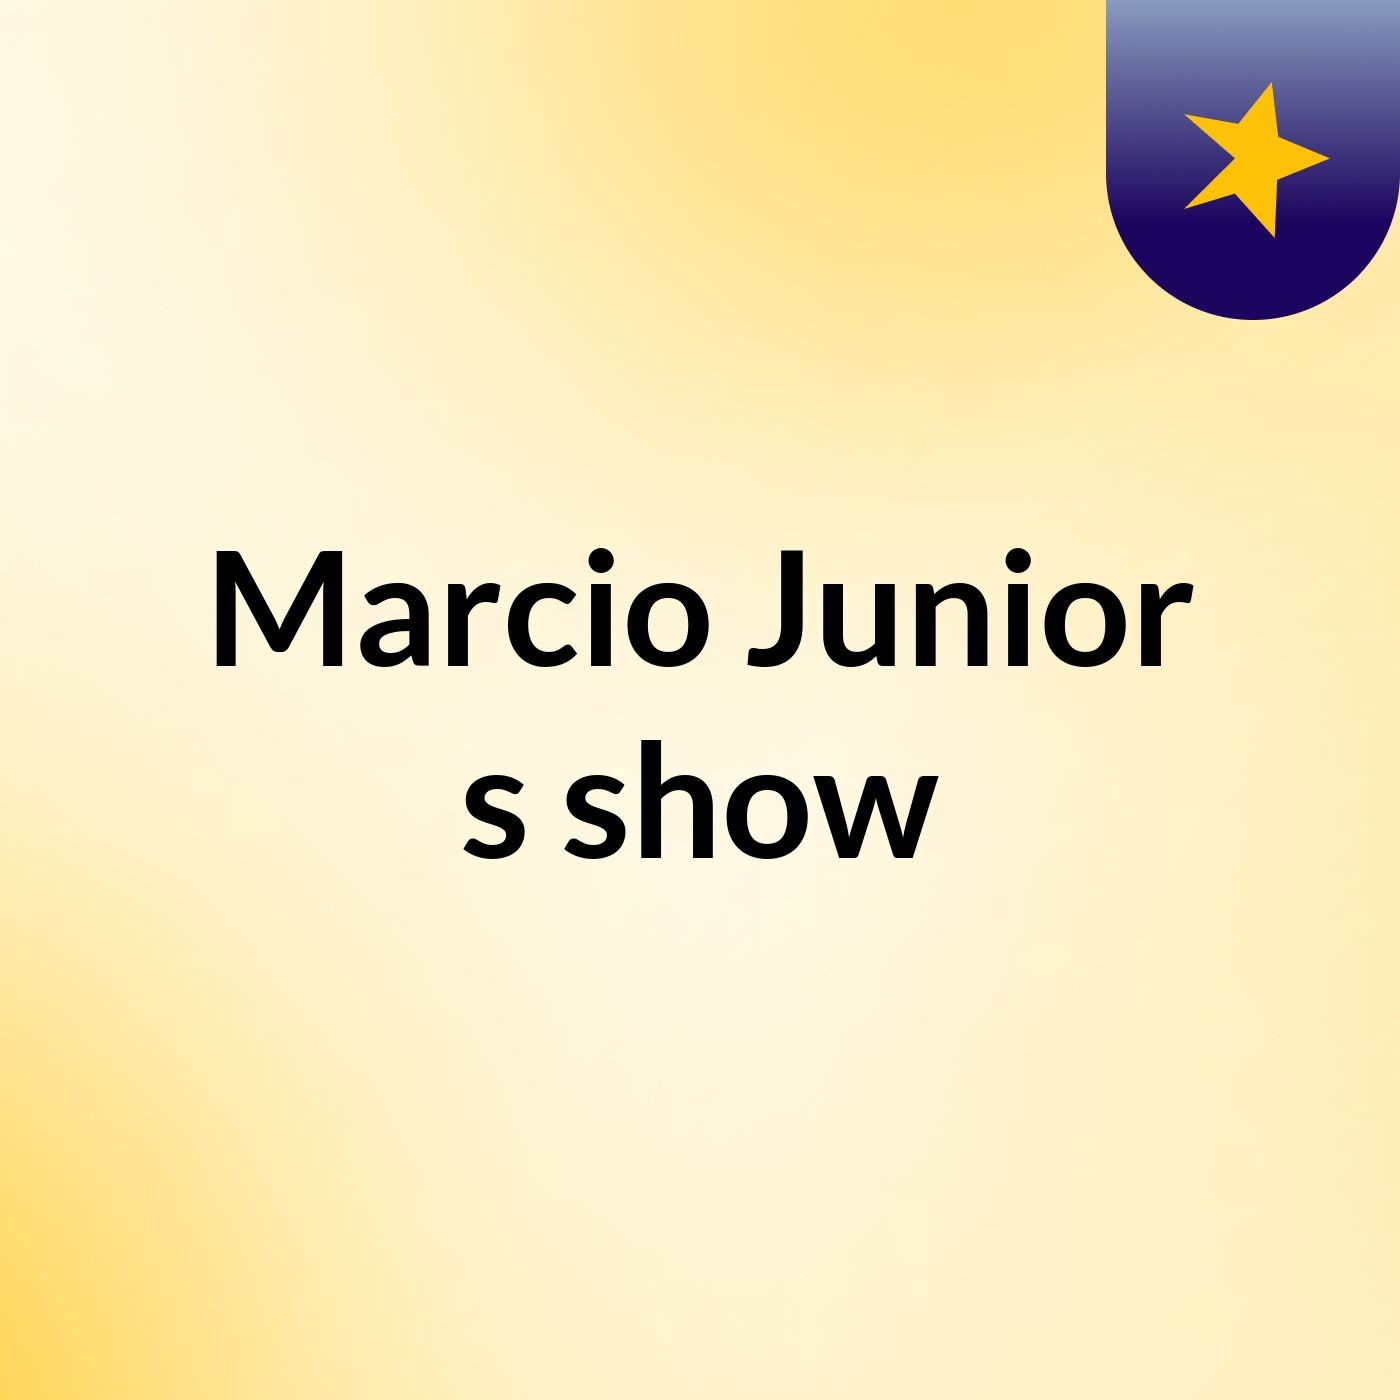 Marcio Junior's show